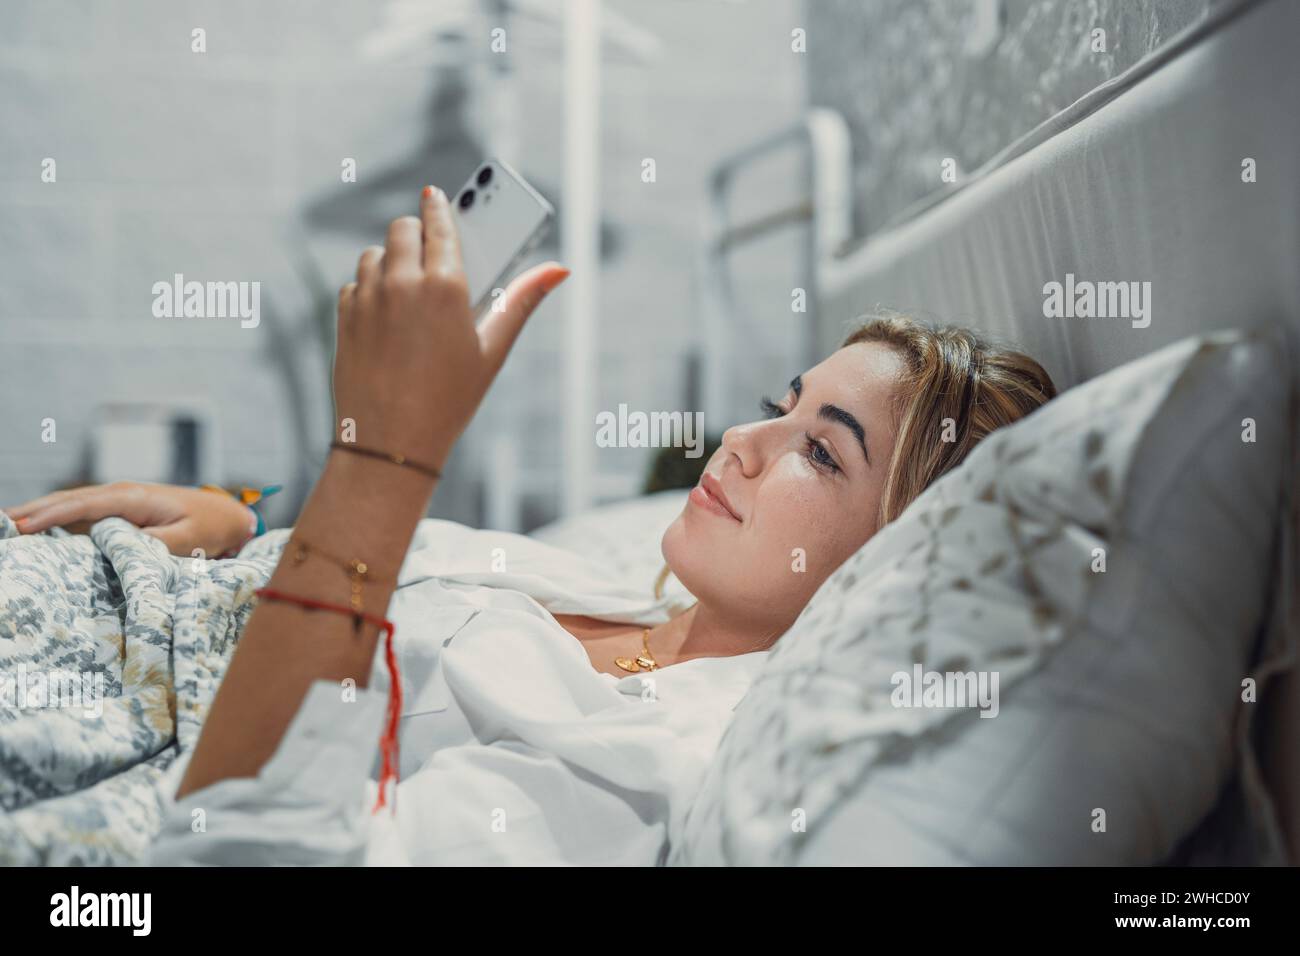 Gadget-sucht. Ruhig lächelnde junge Frau oder Mädchen im Teenageralter, die an einem gemütlichen Bett liegt, das Handy in der Hand hält und auf den Bildschirm schaut, um den Account des sozialen Netzwerks zu überprüfen, bevor sie einschlafen oder nach dem Aufwachen Stockfoto